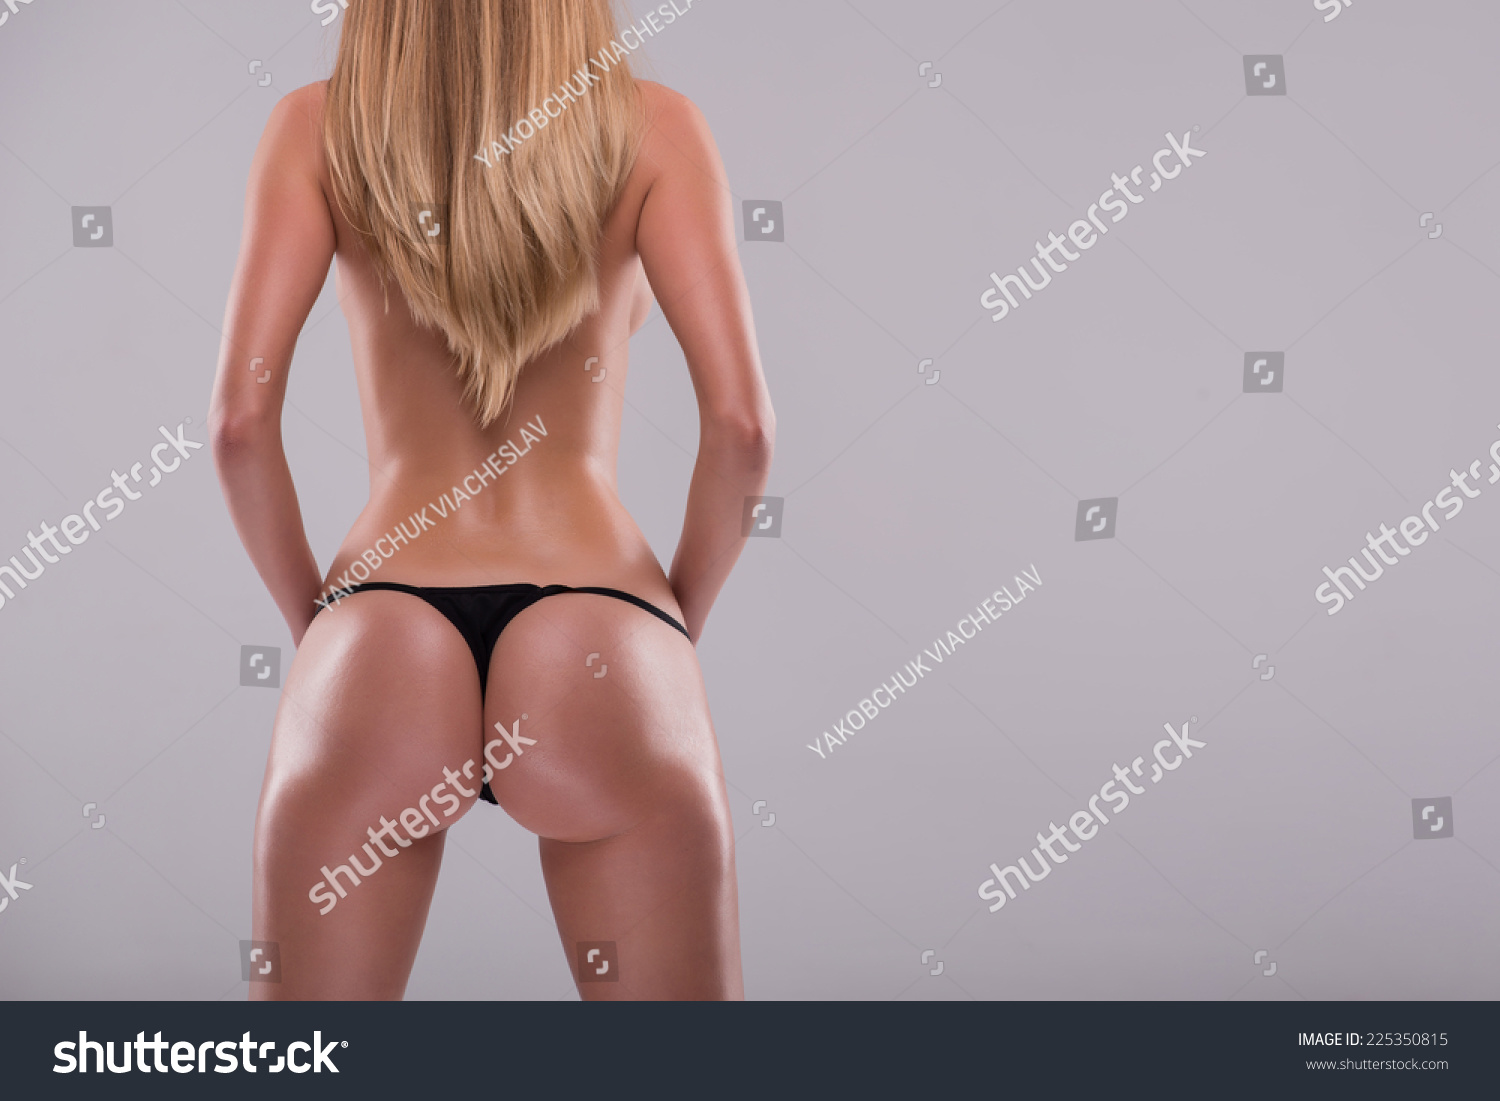 great ass girl